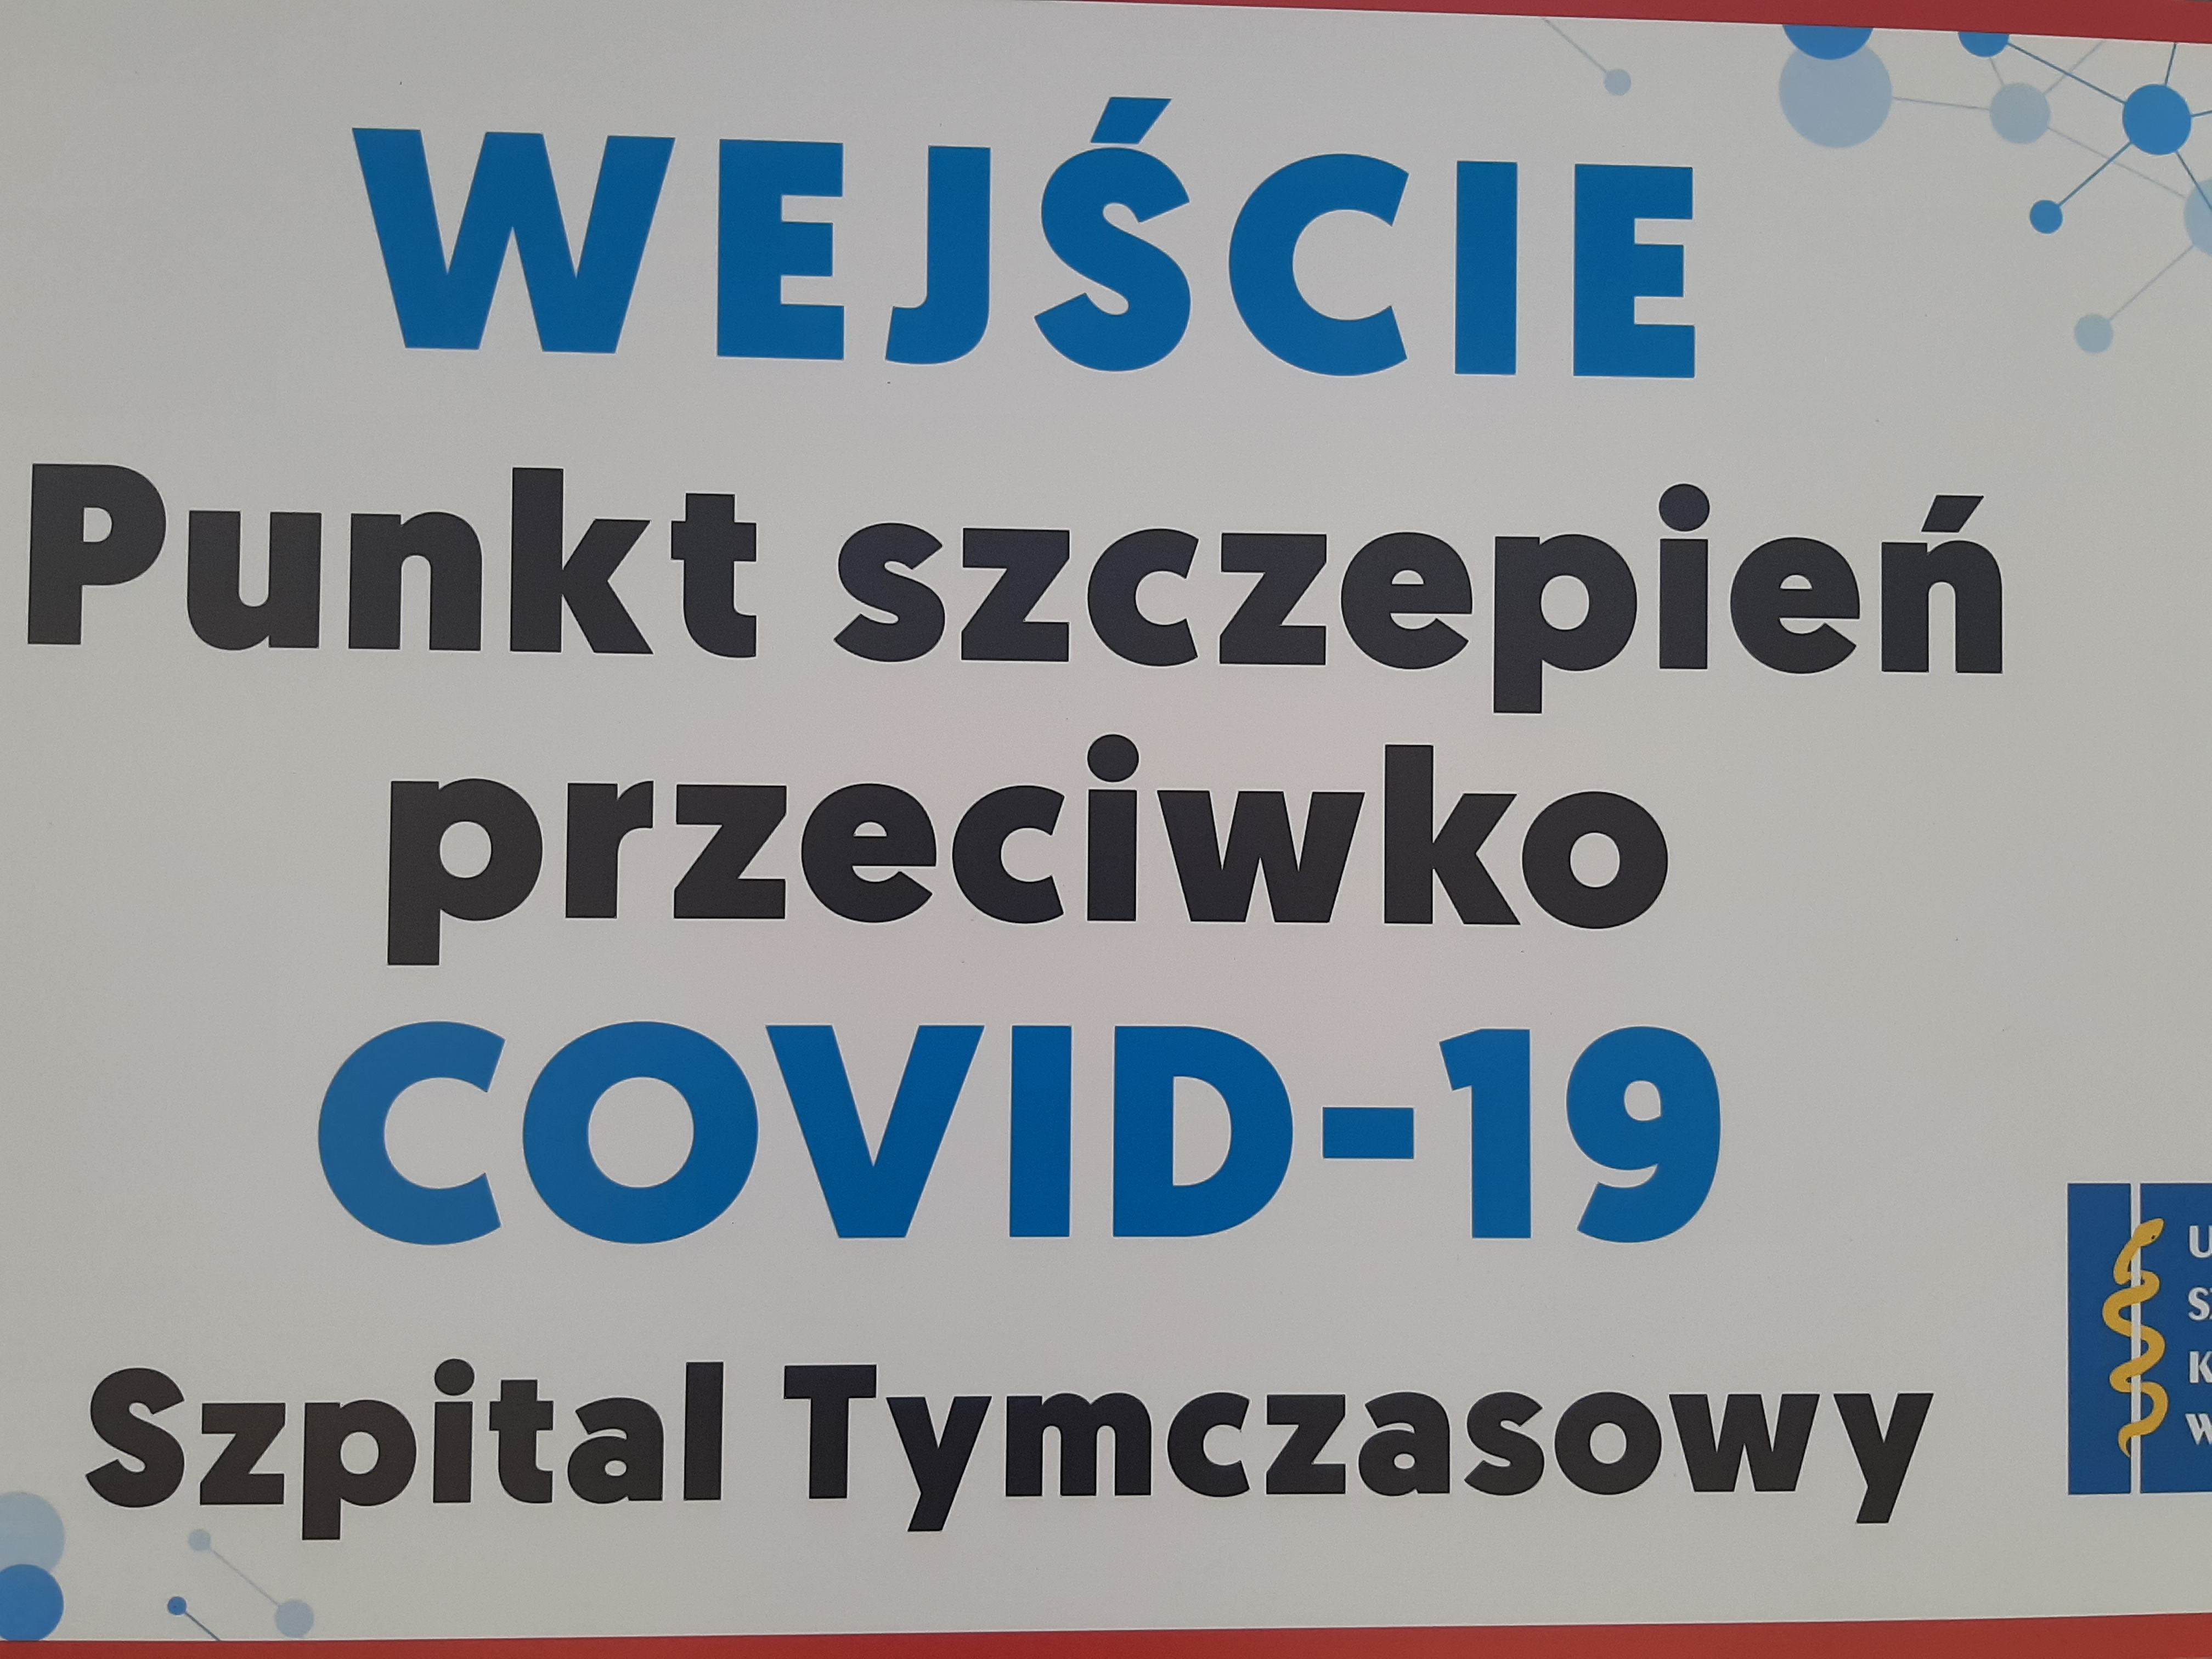 Tabliczka z napisem: Wejście. Punkt szczepień przeciwko COVID - 19. Szpital tymczasowy